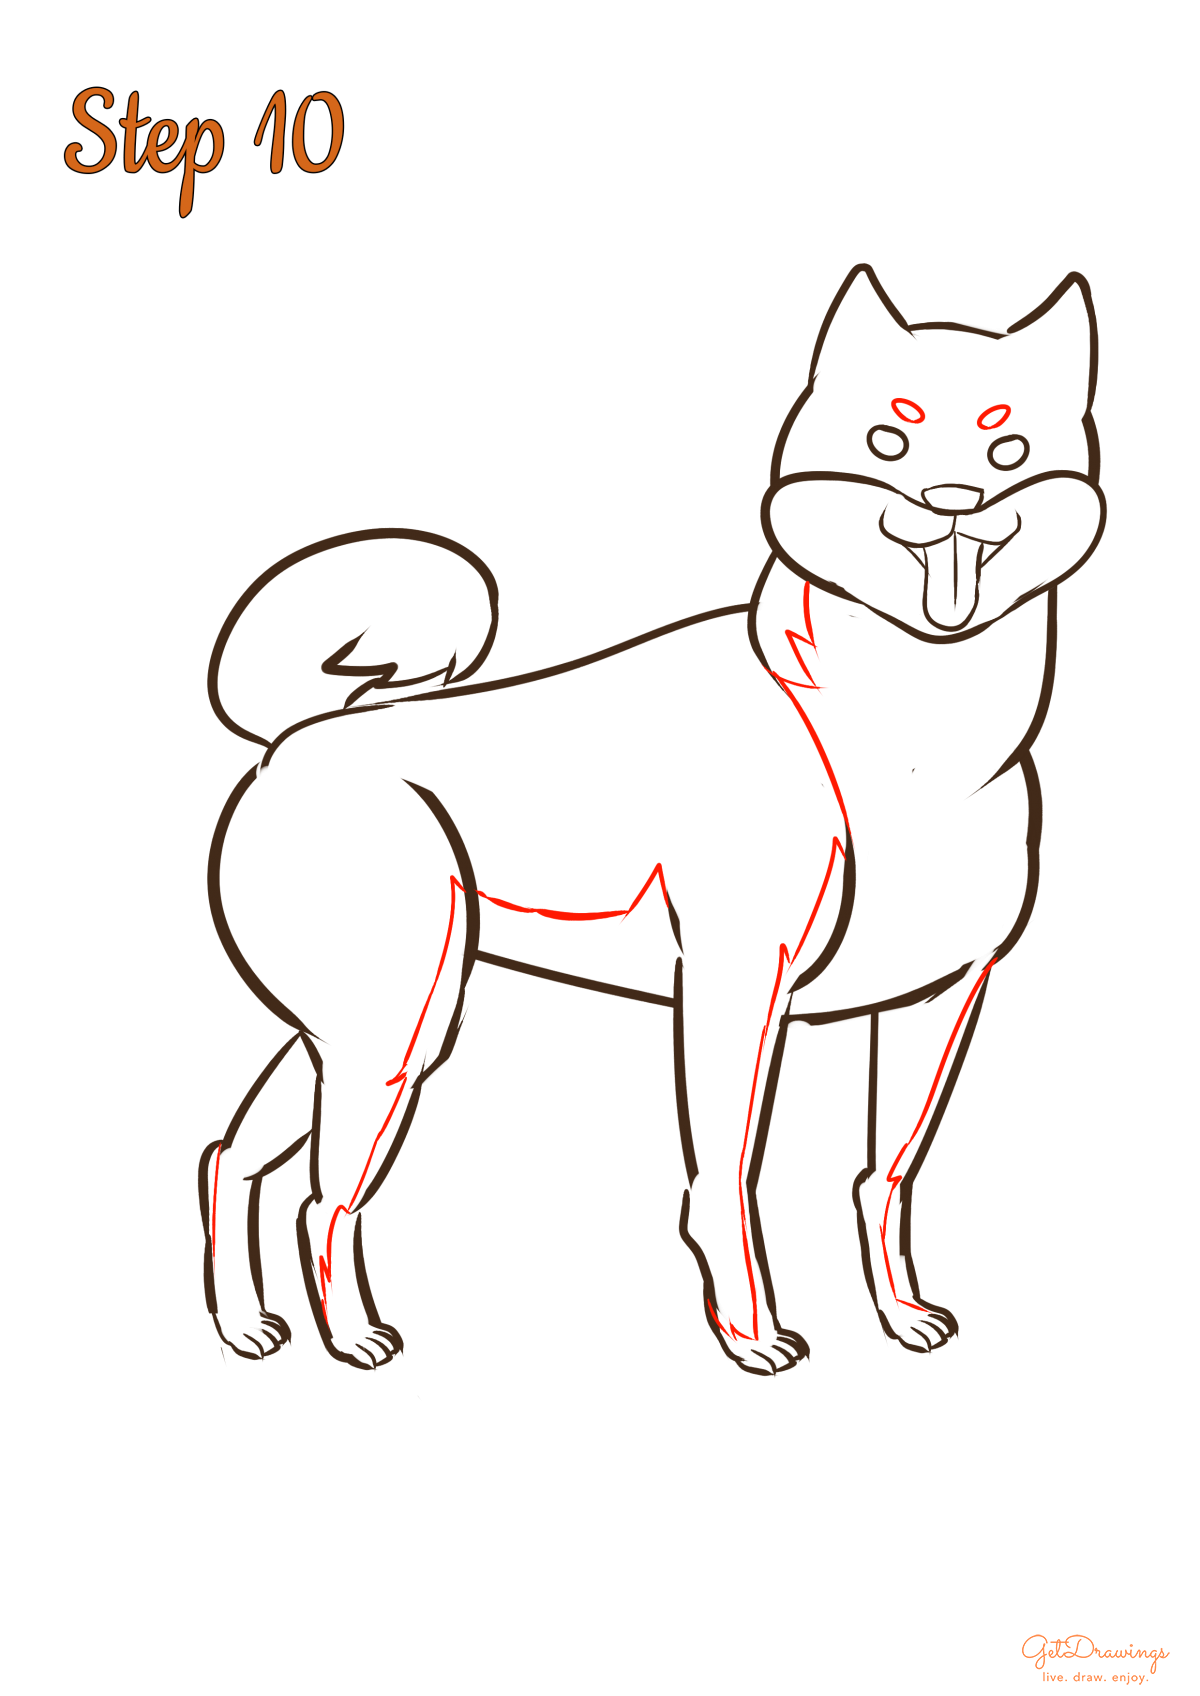 How to draw a Shiba Inu dog?